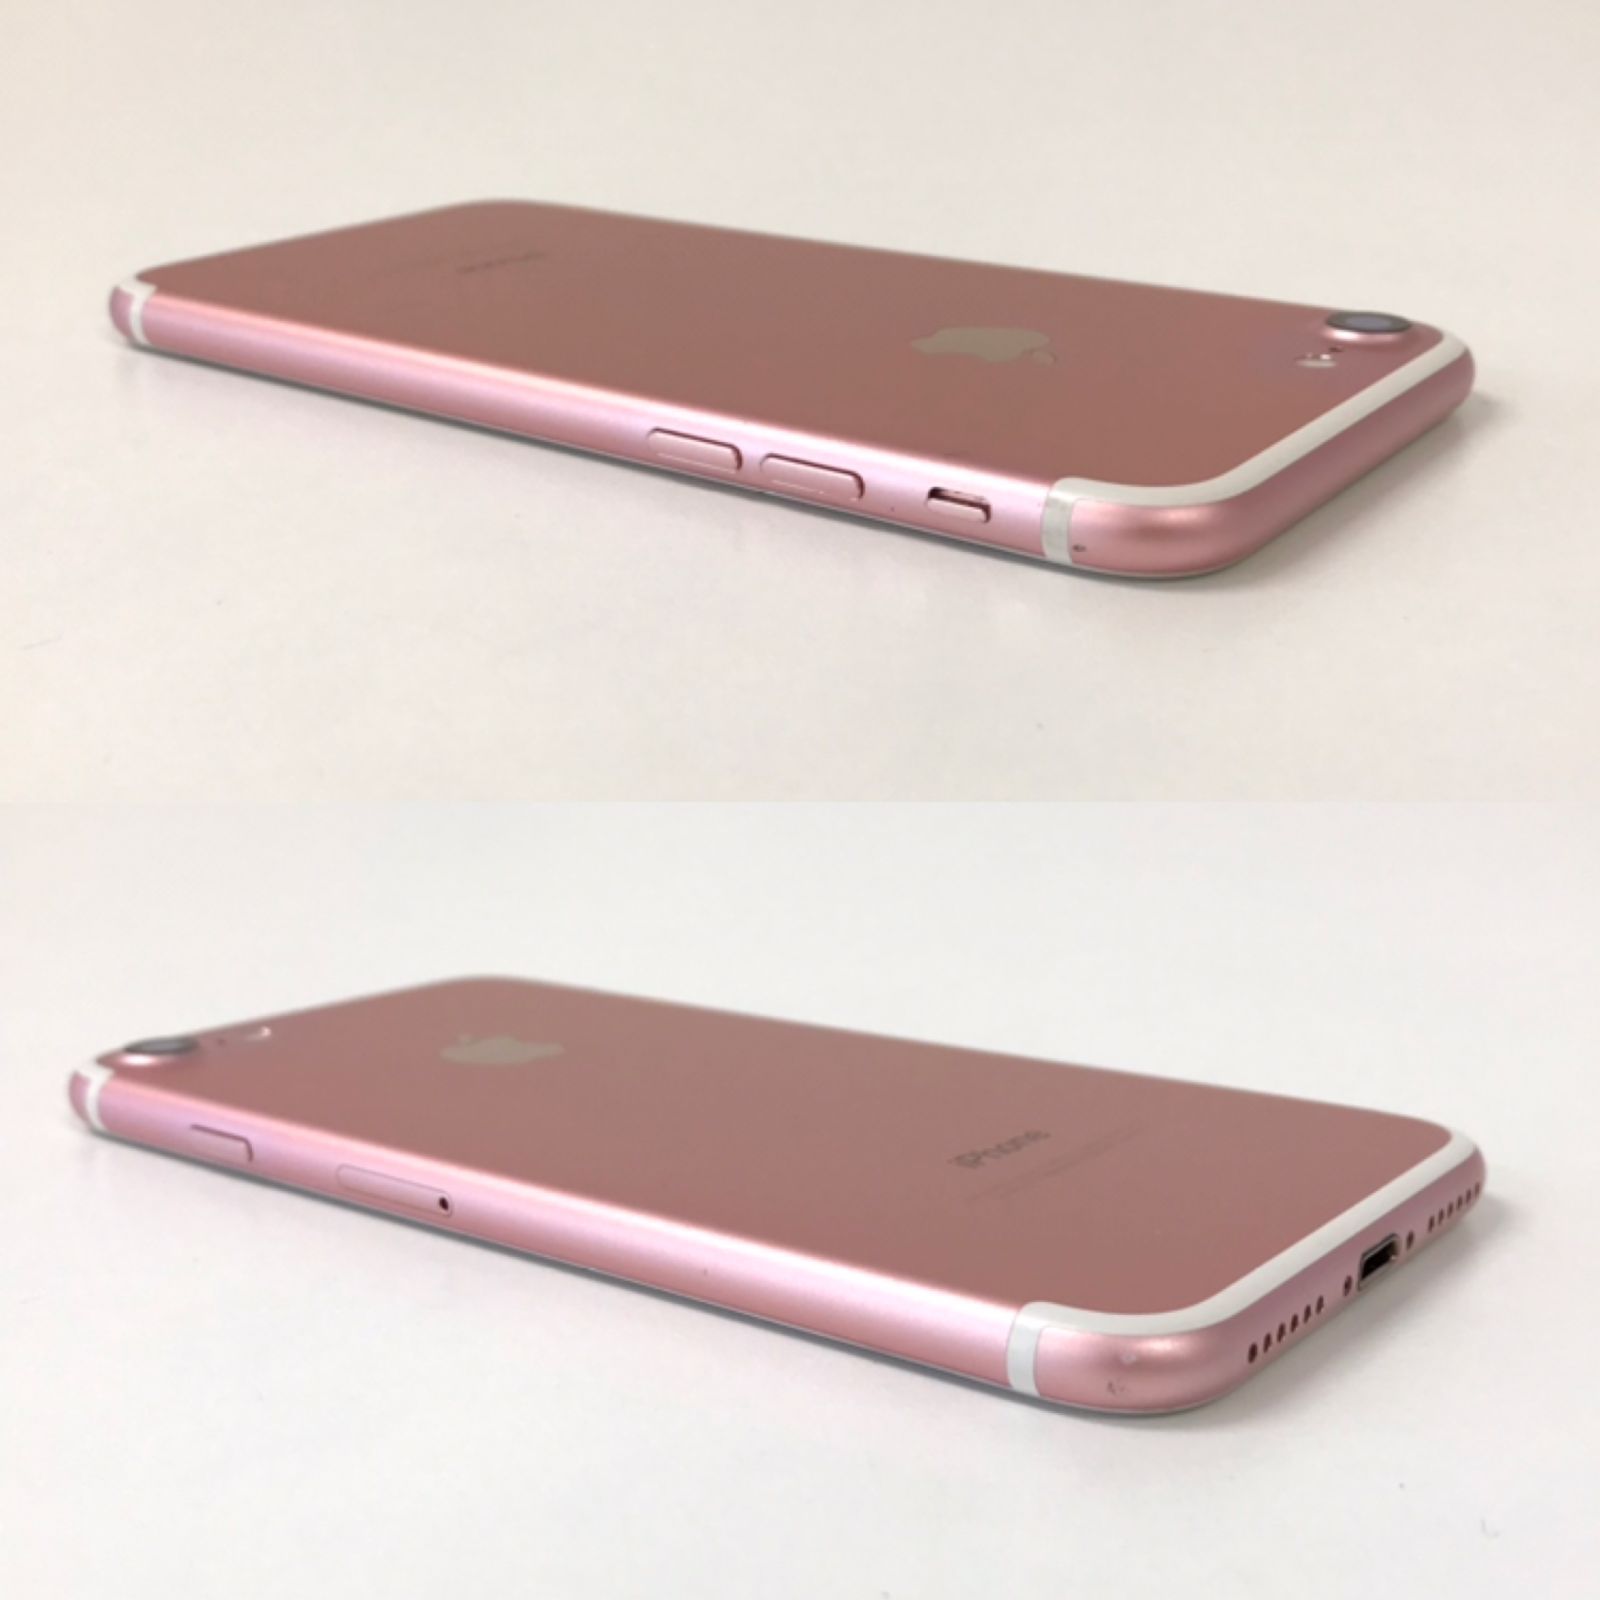 θ【SIMロック解除済み】iPhone 7 32GB ローズゴールド - メルカリ